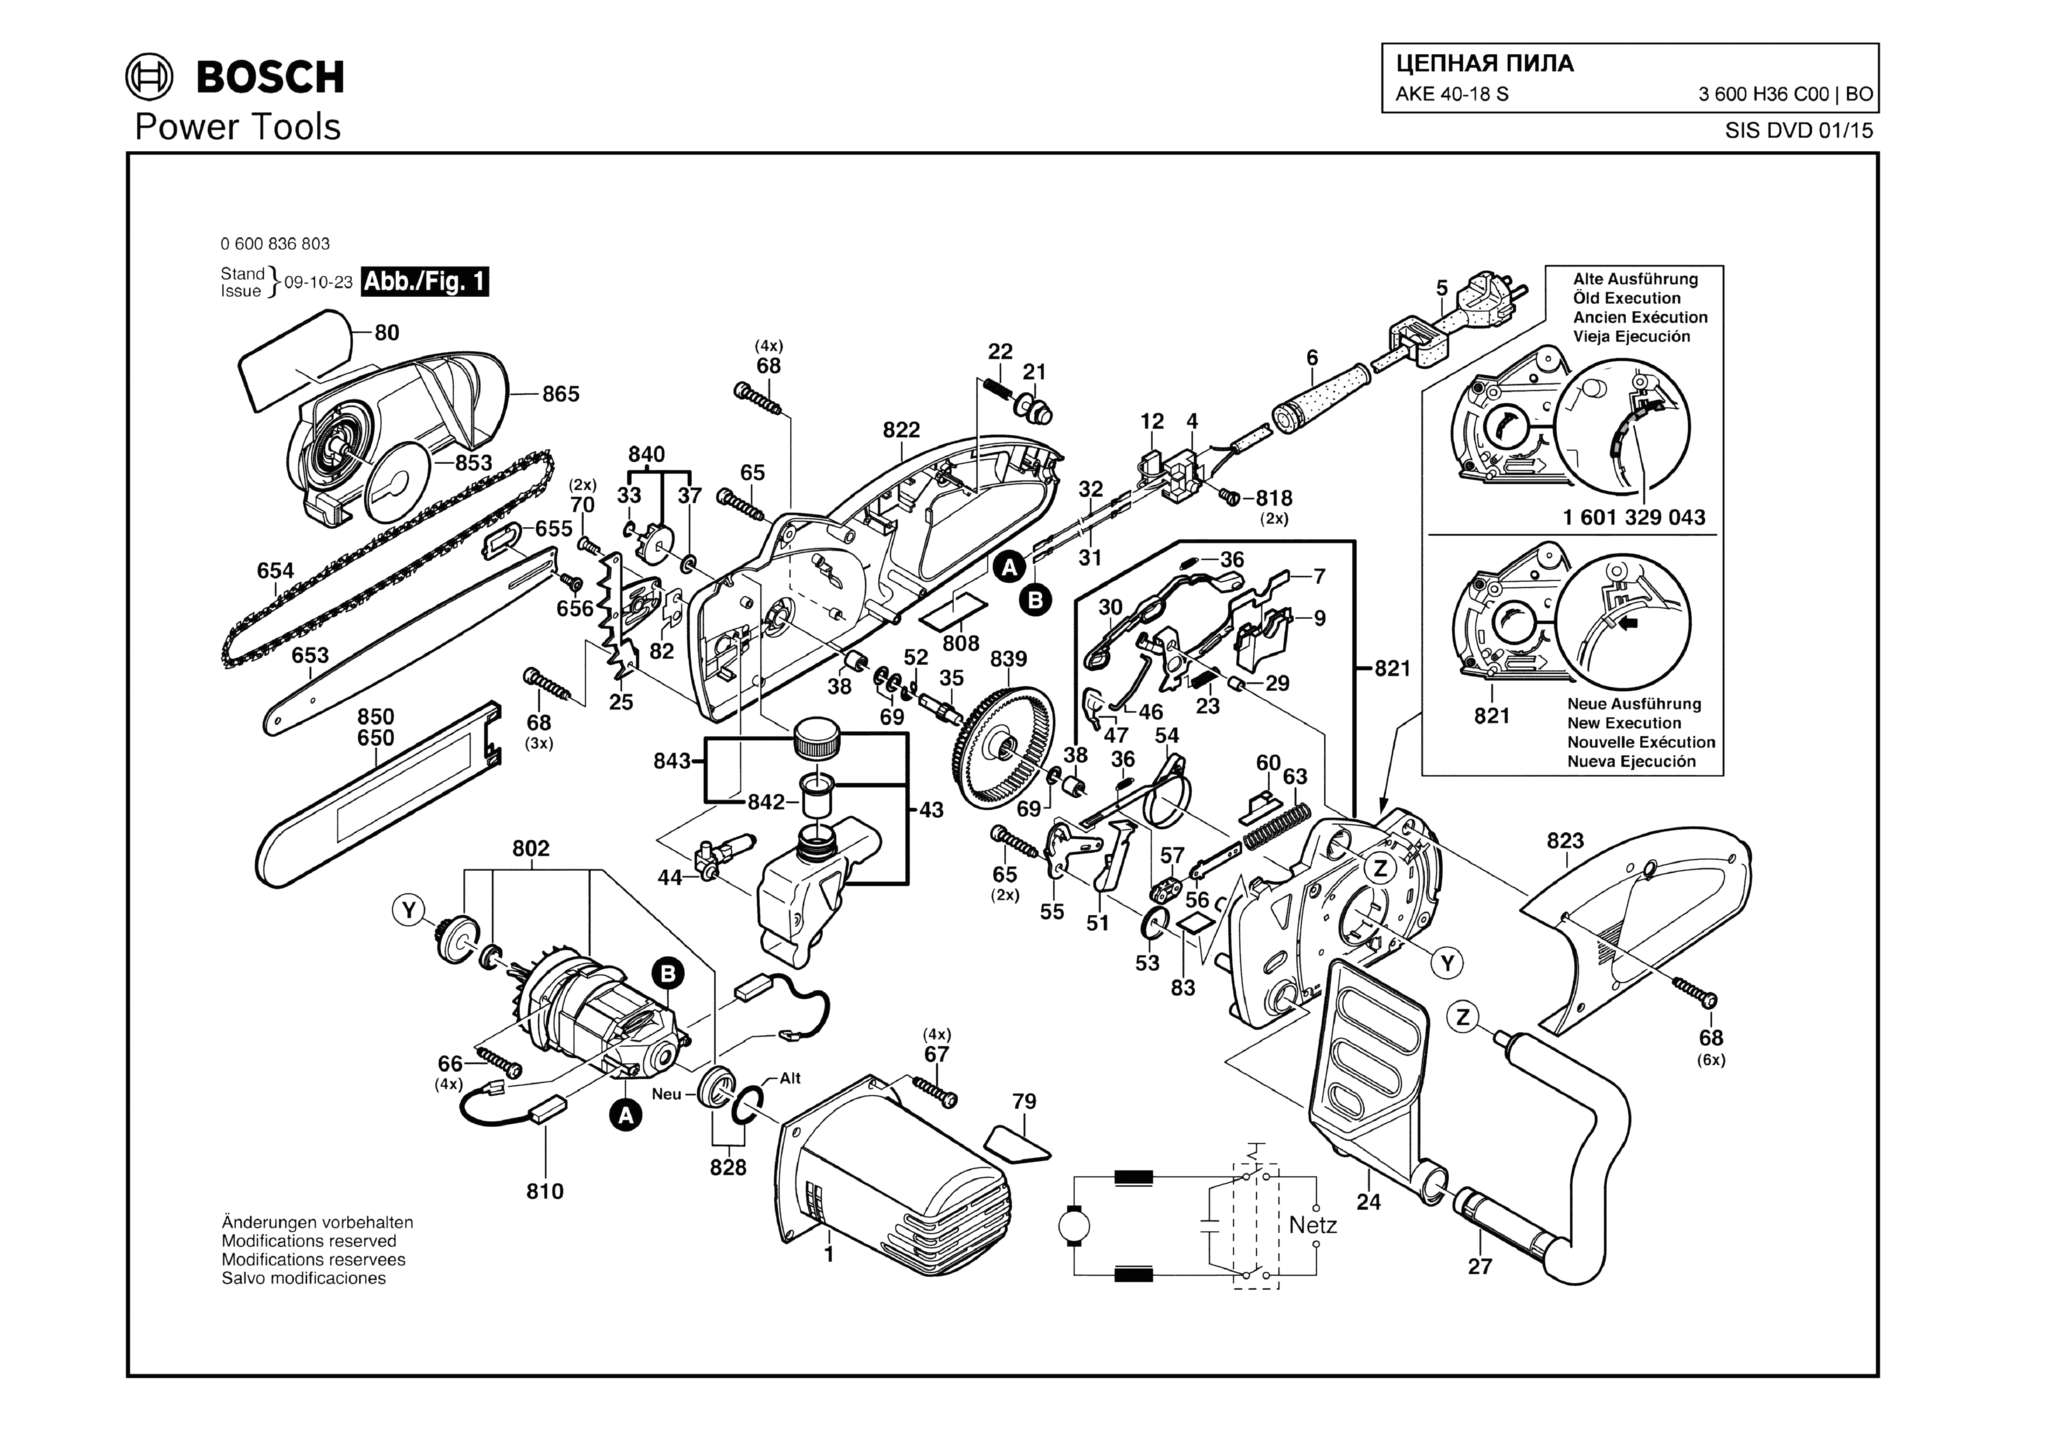 Запчасти, схема и деталировка Bosch AKE 40-18 S (ТИП 3600H36C00)